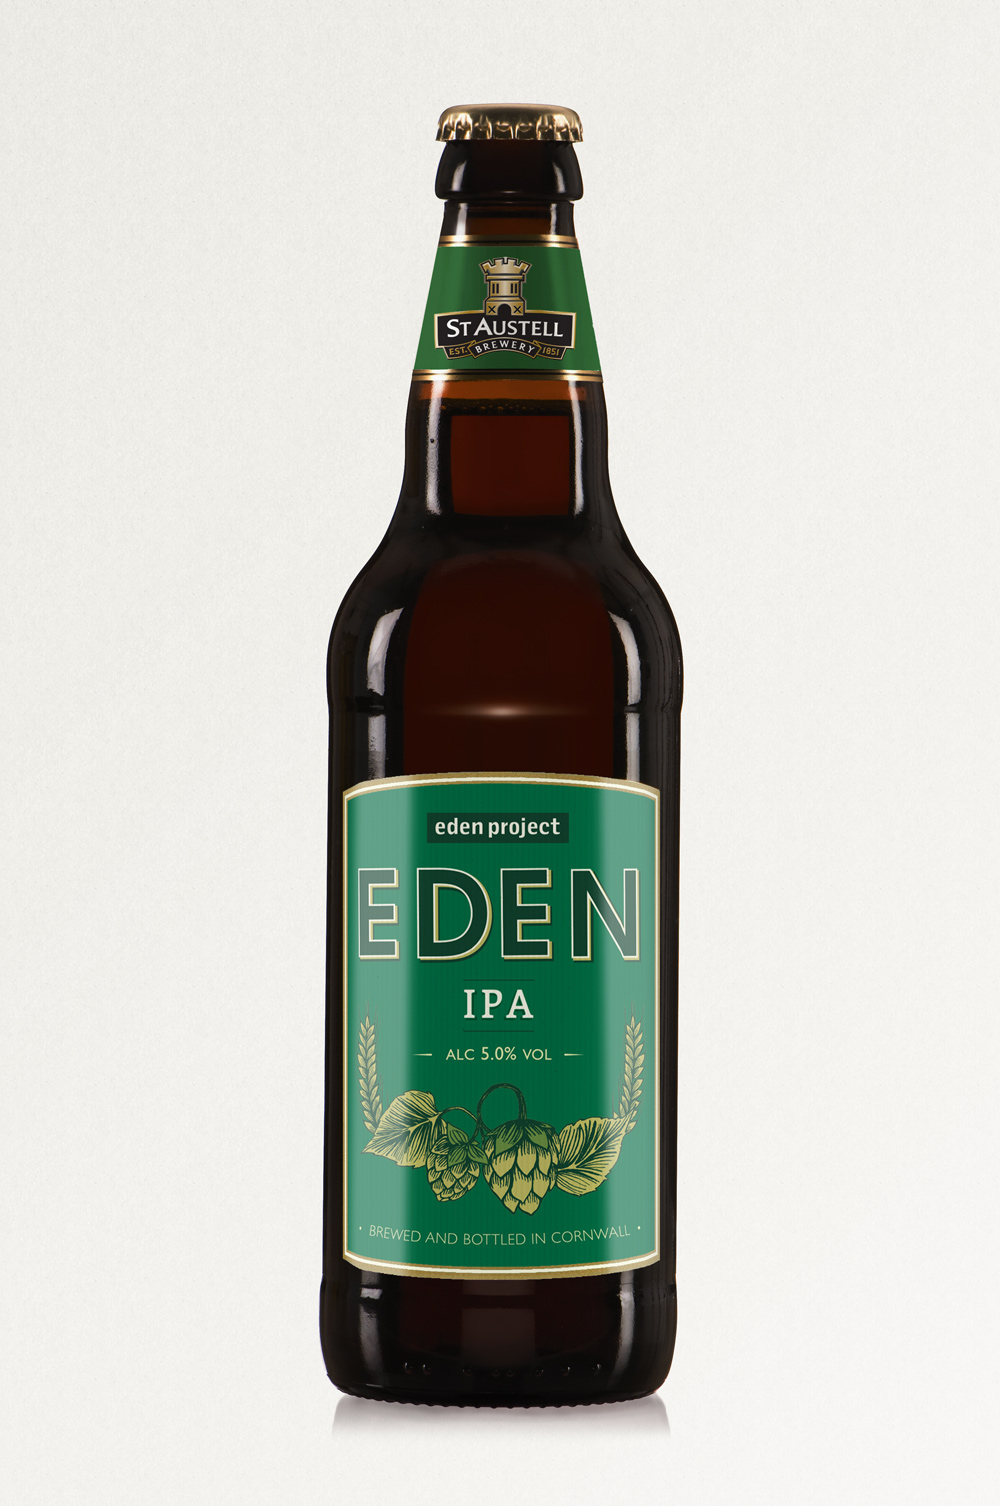 EDEN IPA, St Austell Brewery, IPA ,bottle label design